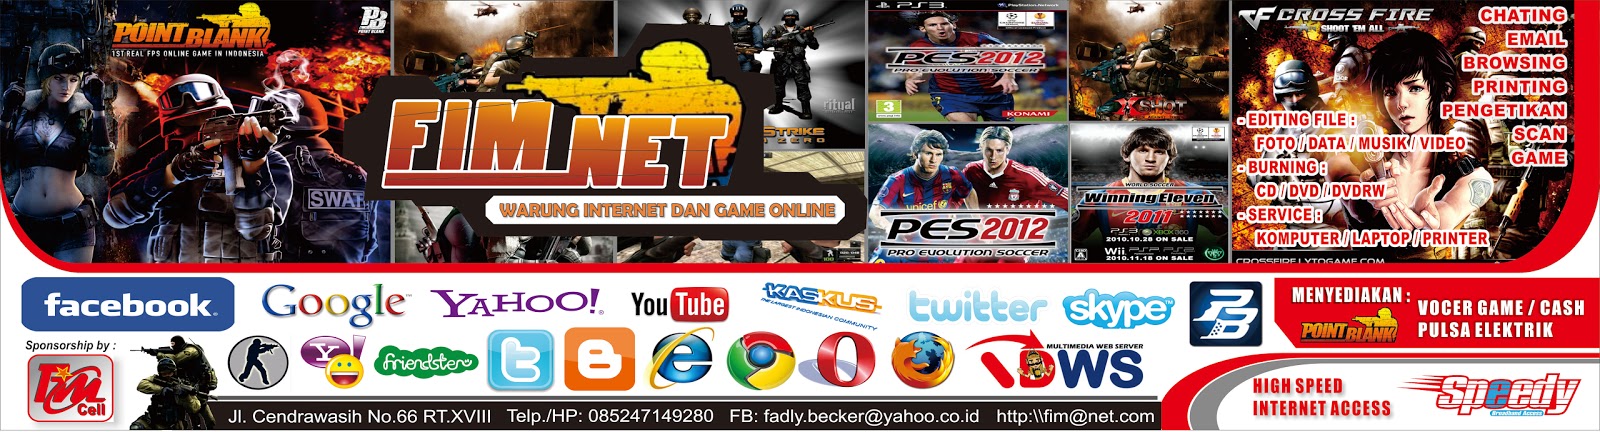  Contoh Spanduk Promosi Warnet Game Online